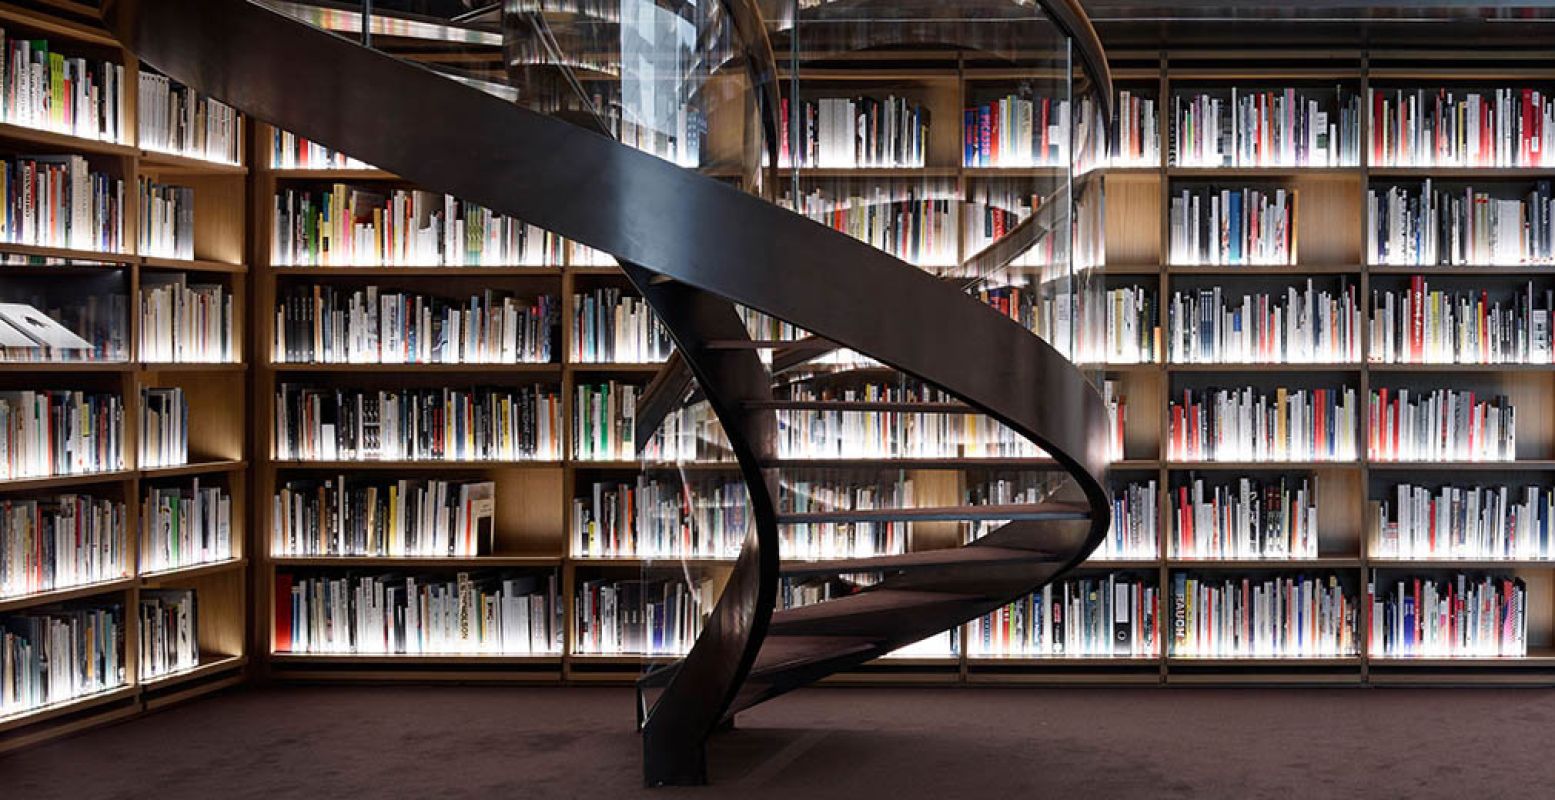 Bibliotheek ontworpen door Andrea Milani. Museum Voorlinden, Wassenaar. Fotograaf: Pietro Savorelli.